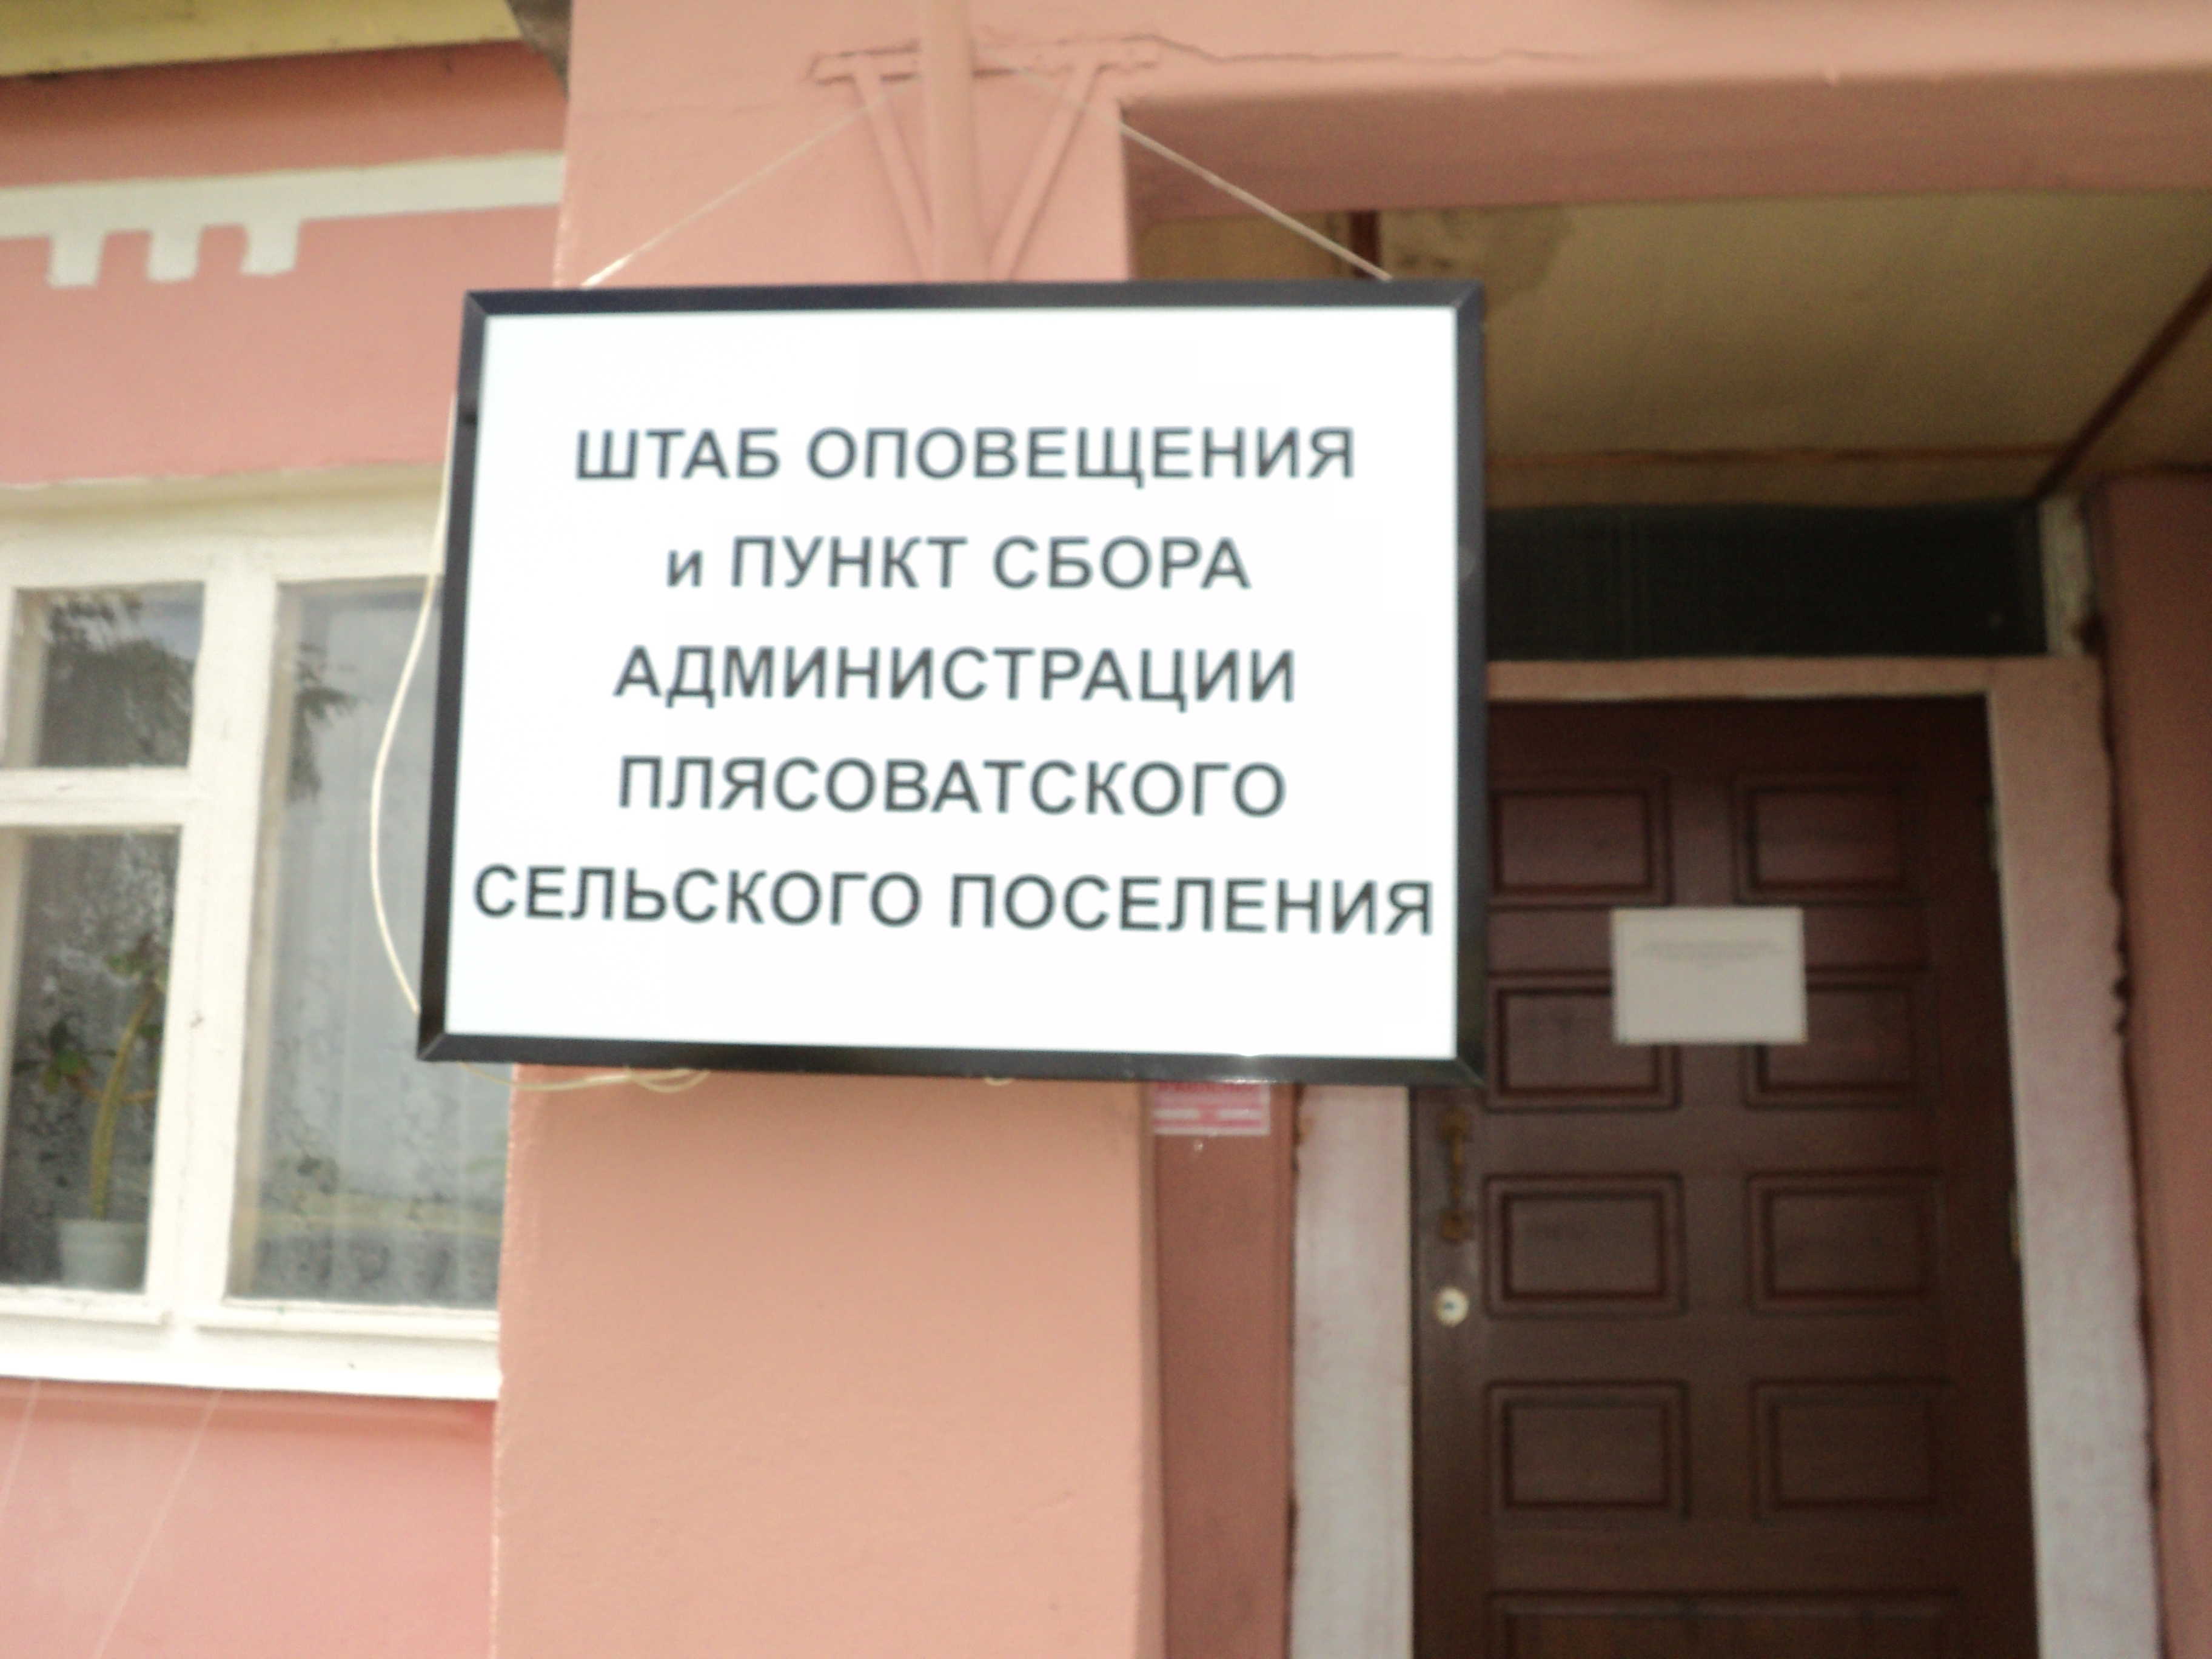 Администрация Плясоватского сельского поселения.